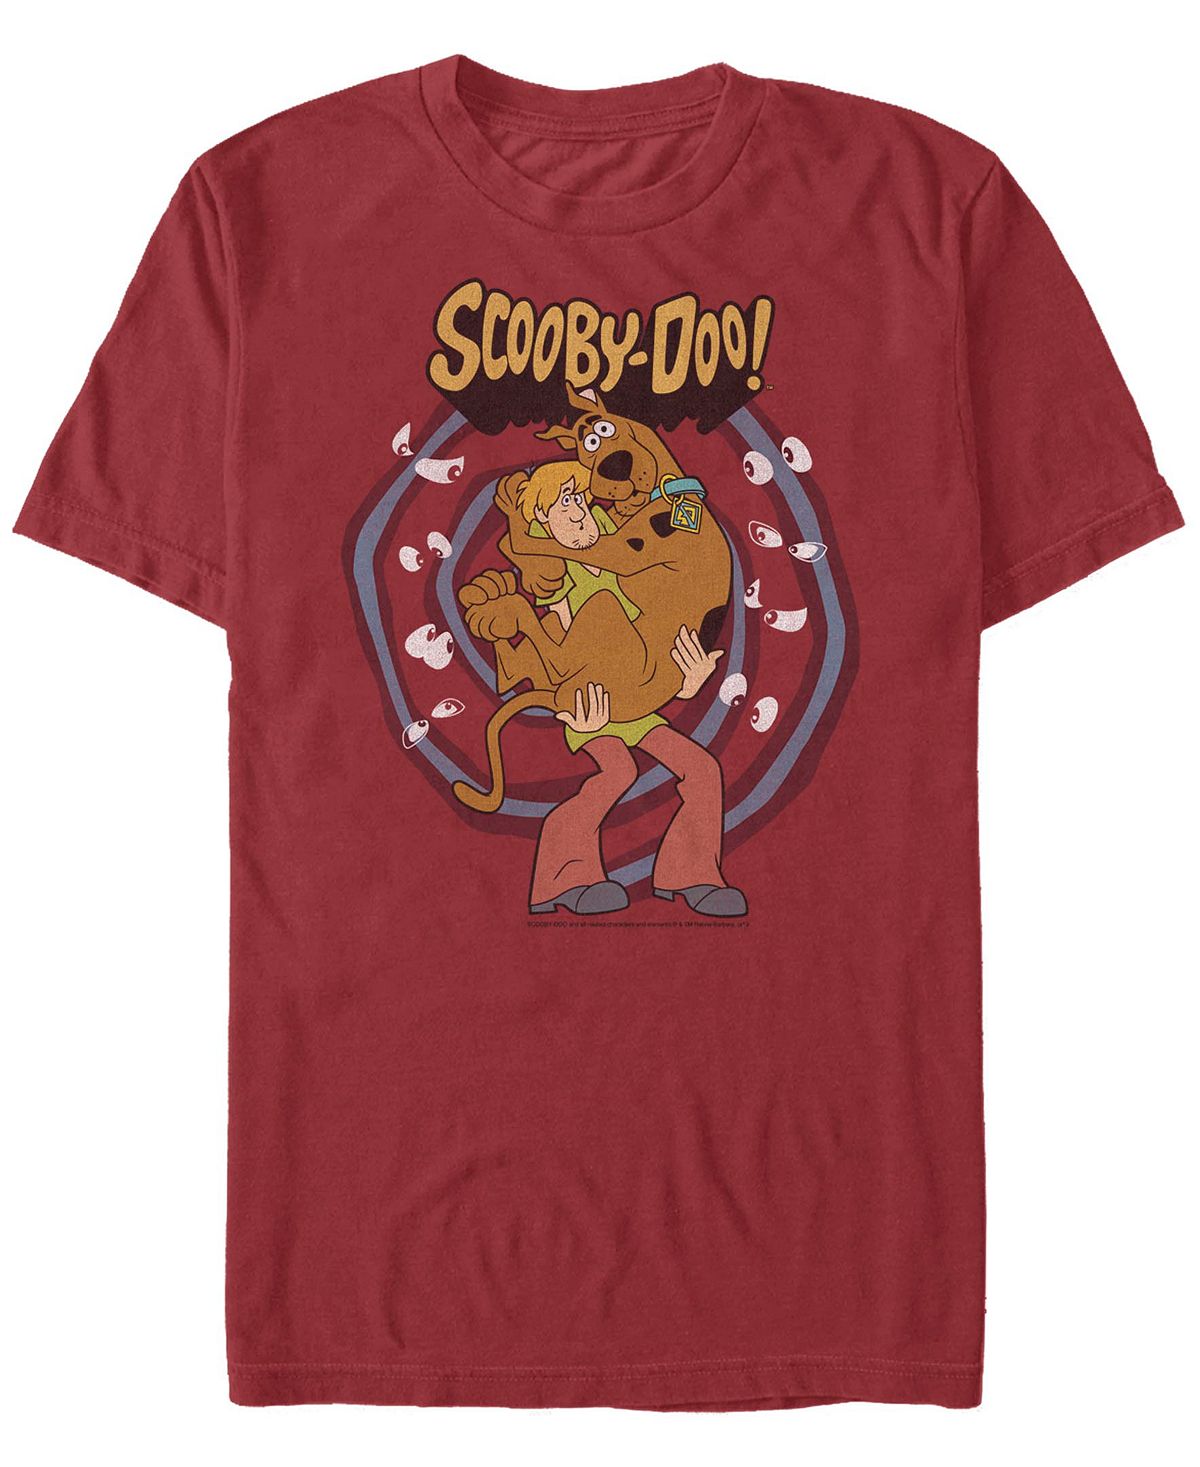 Мужская футболка с коротким рукавом scooby doo rover here Fifth Sun мужская футболка с коротким рукавом scaredy shaggy zoinks scooby doo fifth sun черный